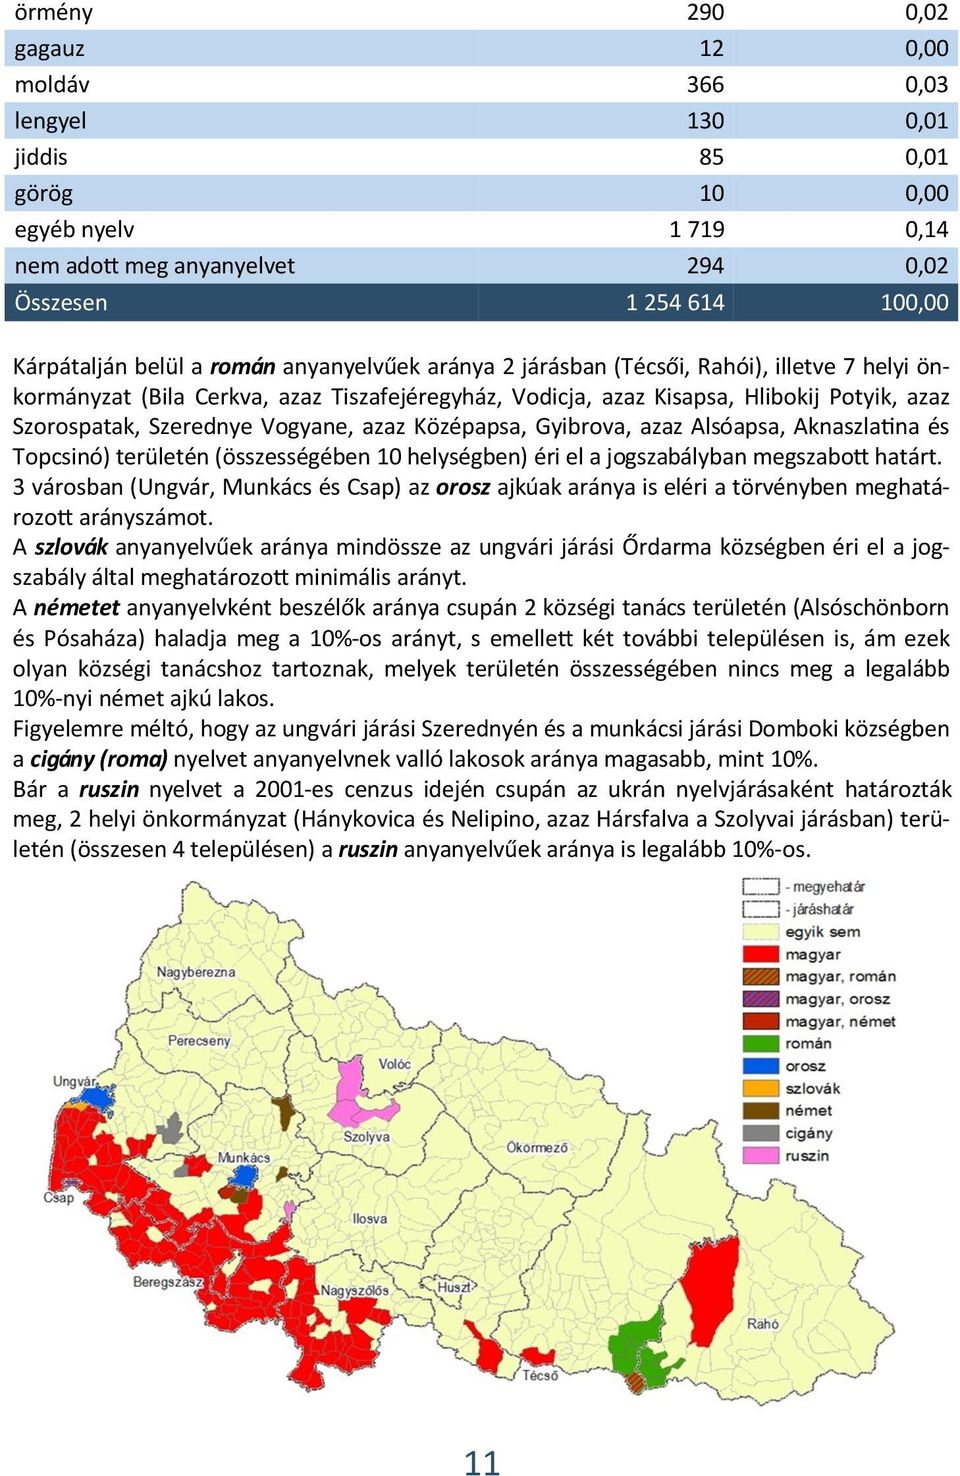 azaz Középapsa, Gyibrova, azaz Alsóapsa, Aknaszlatina és Topcsinó) területén (összességében 10 helységben) éri el a jogszabályban megszabott határt.